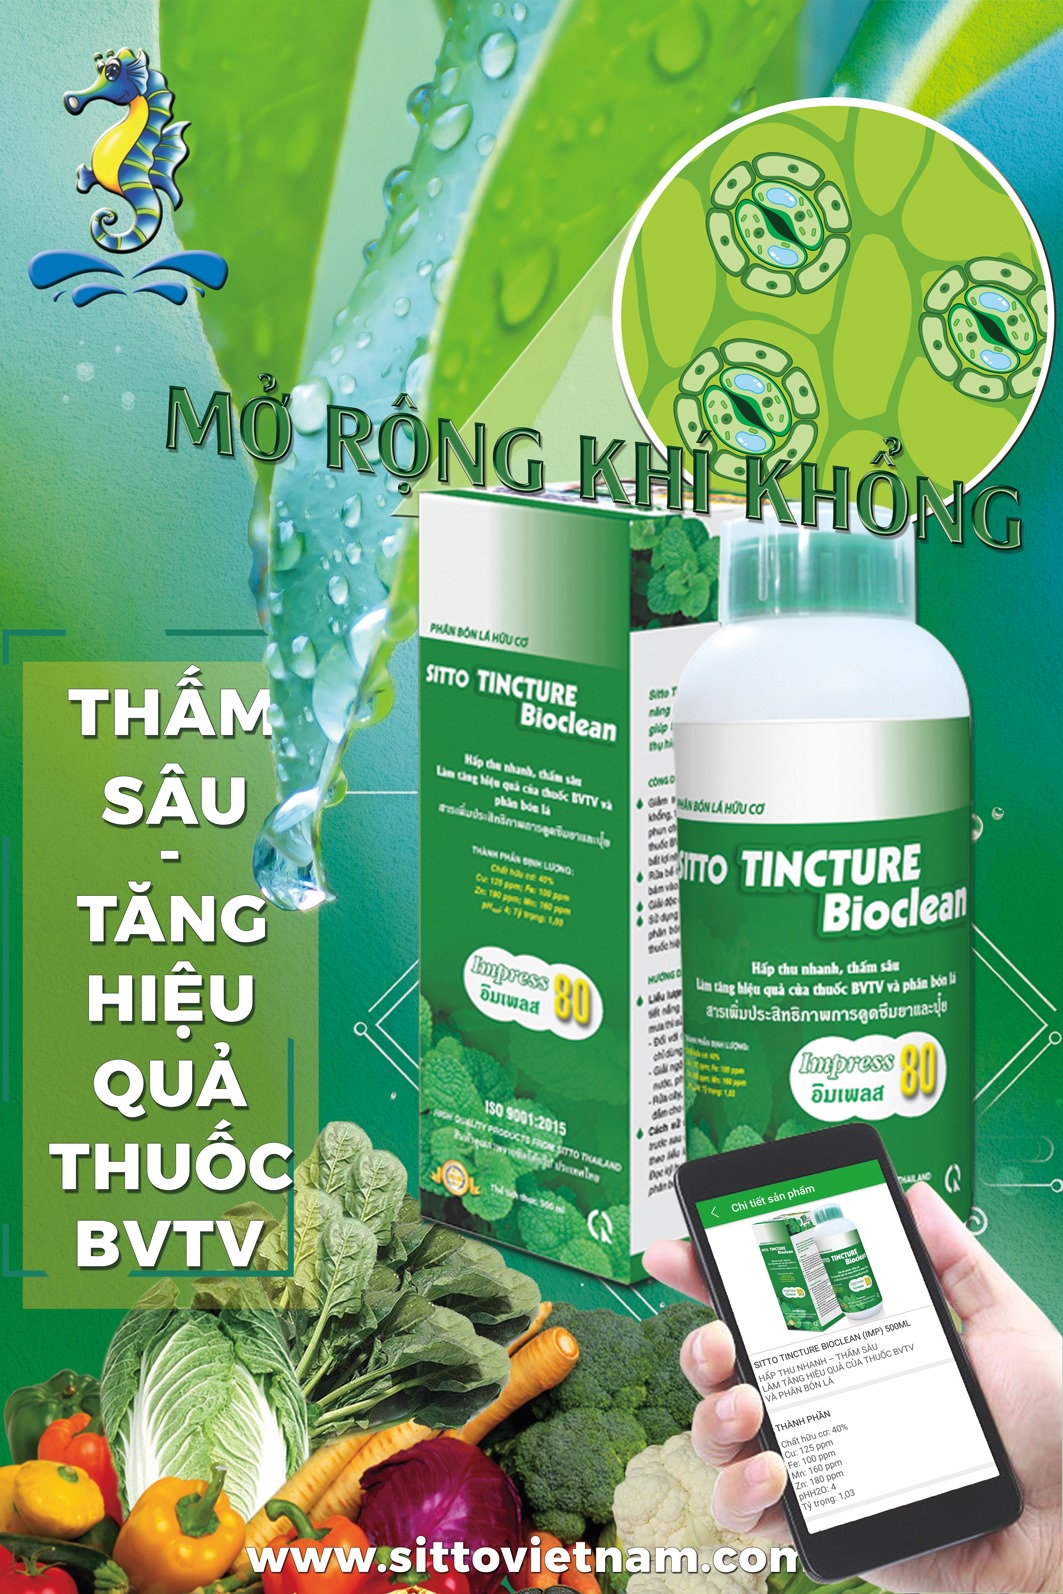 Sitto Tincture Bioclean - Impress 80 (Chai 500ml) - Giảm thất thoát và tăng hiệu quả sử dụng thuốc BVTV, phân bón lá